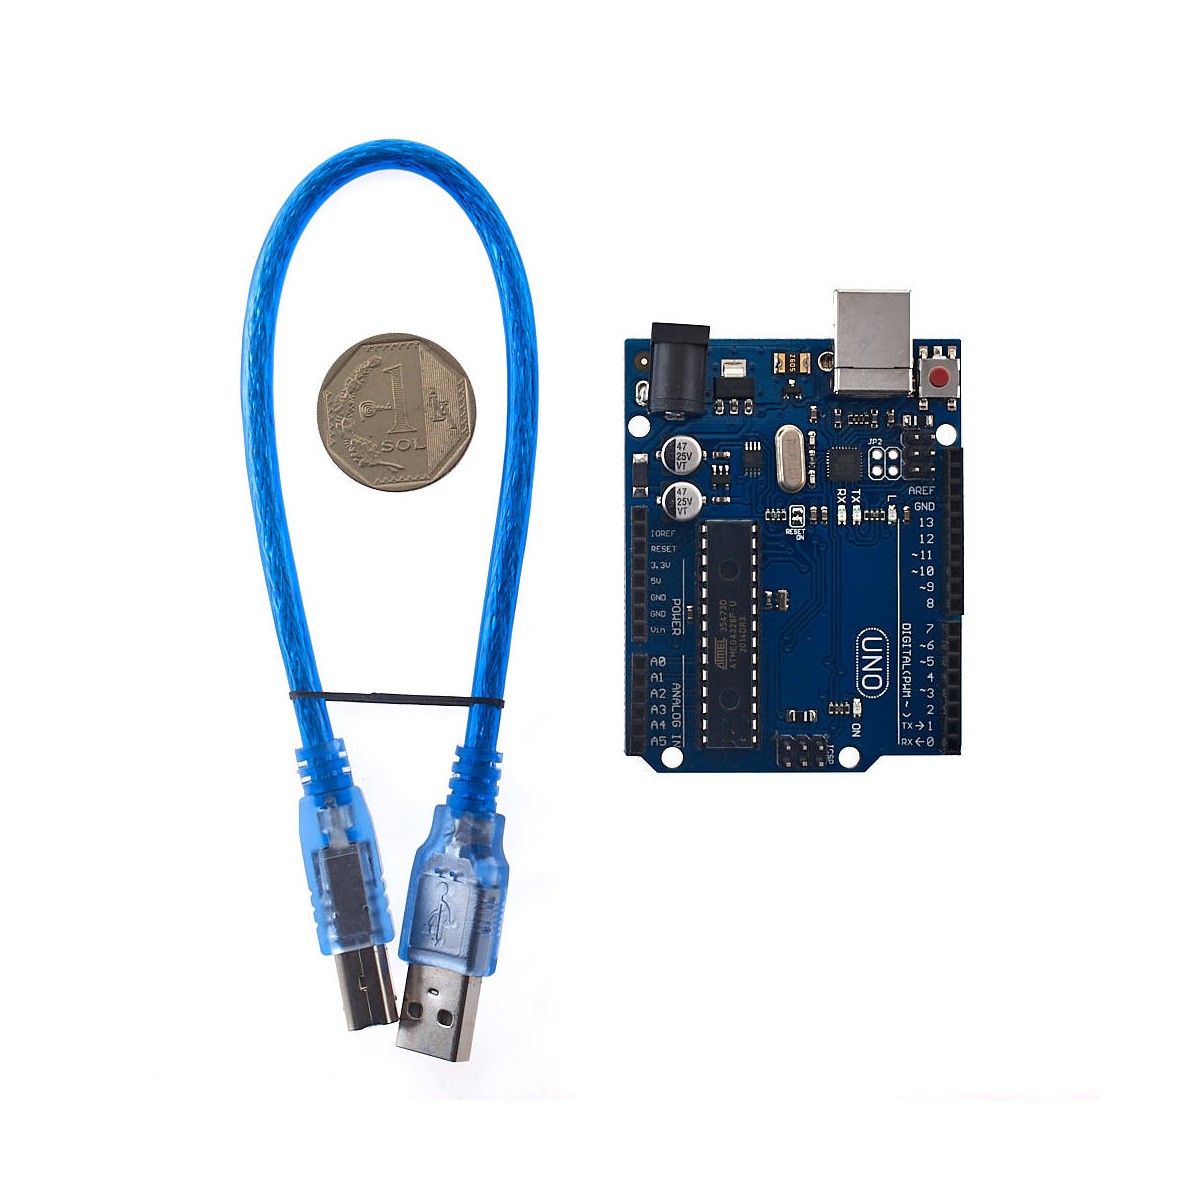 Arduino UNO R3 Compatible. Tarjeta de Aprendizaje de Electrónica